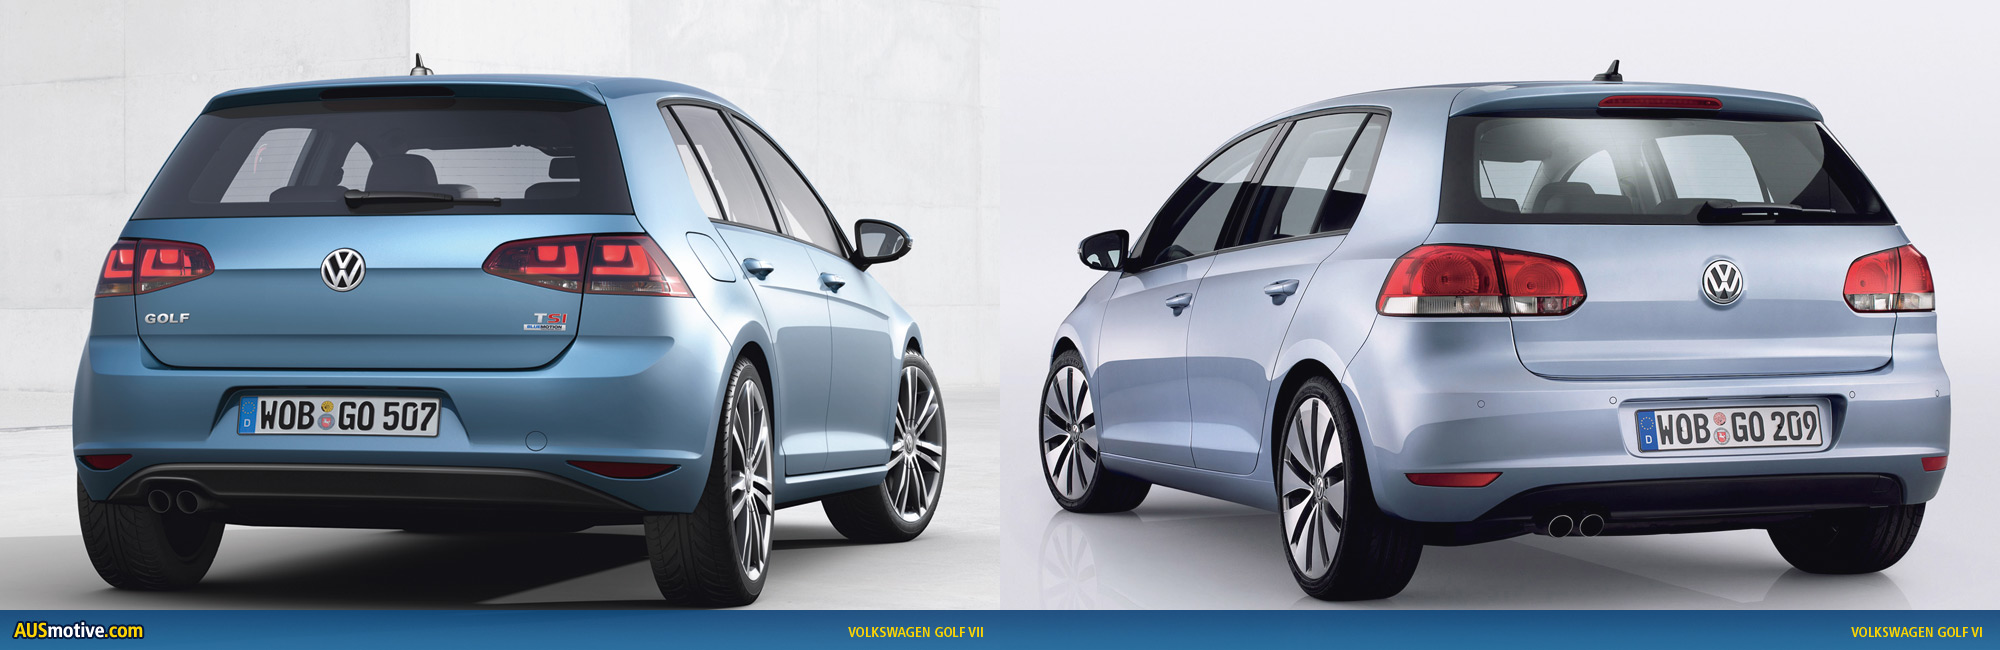 VW Golf 6 vs. Golf 7 im Vergleich: Rückblick auf den letzten Modellwechsel  